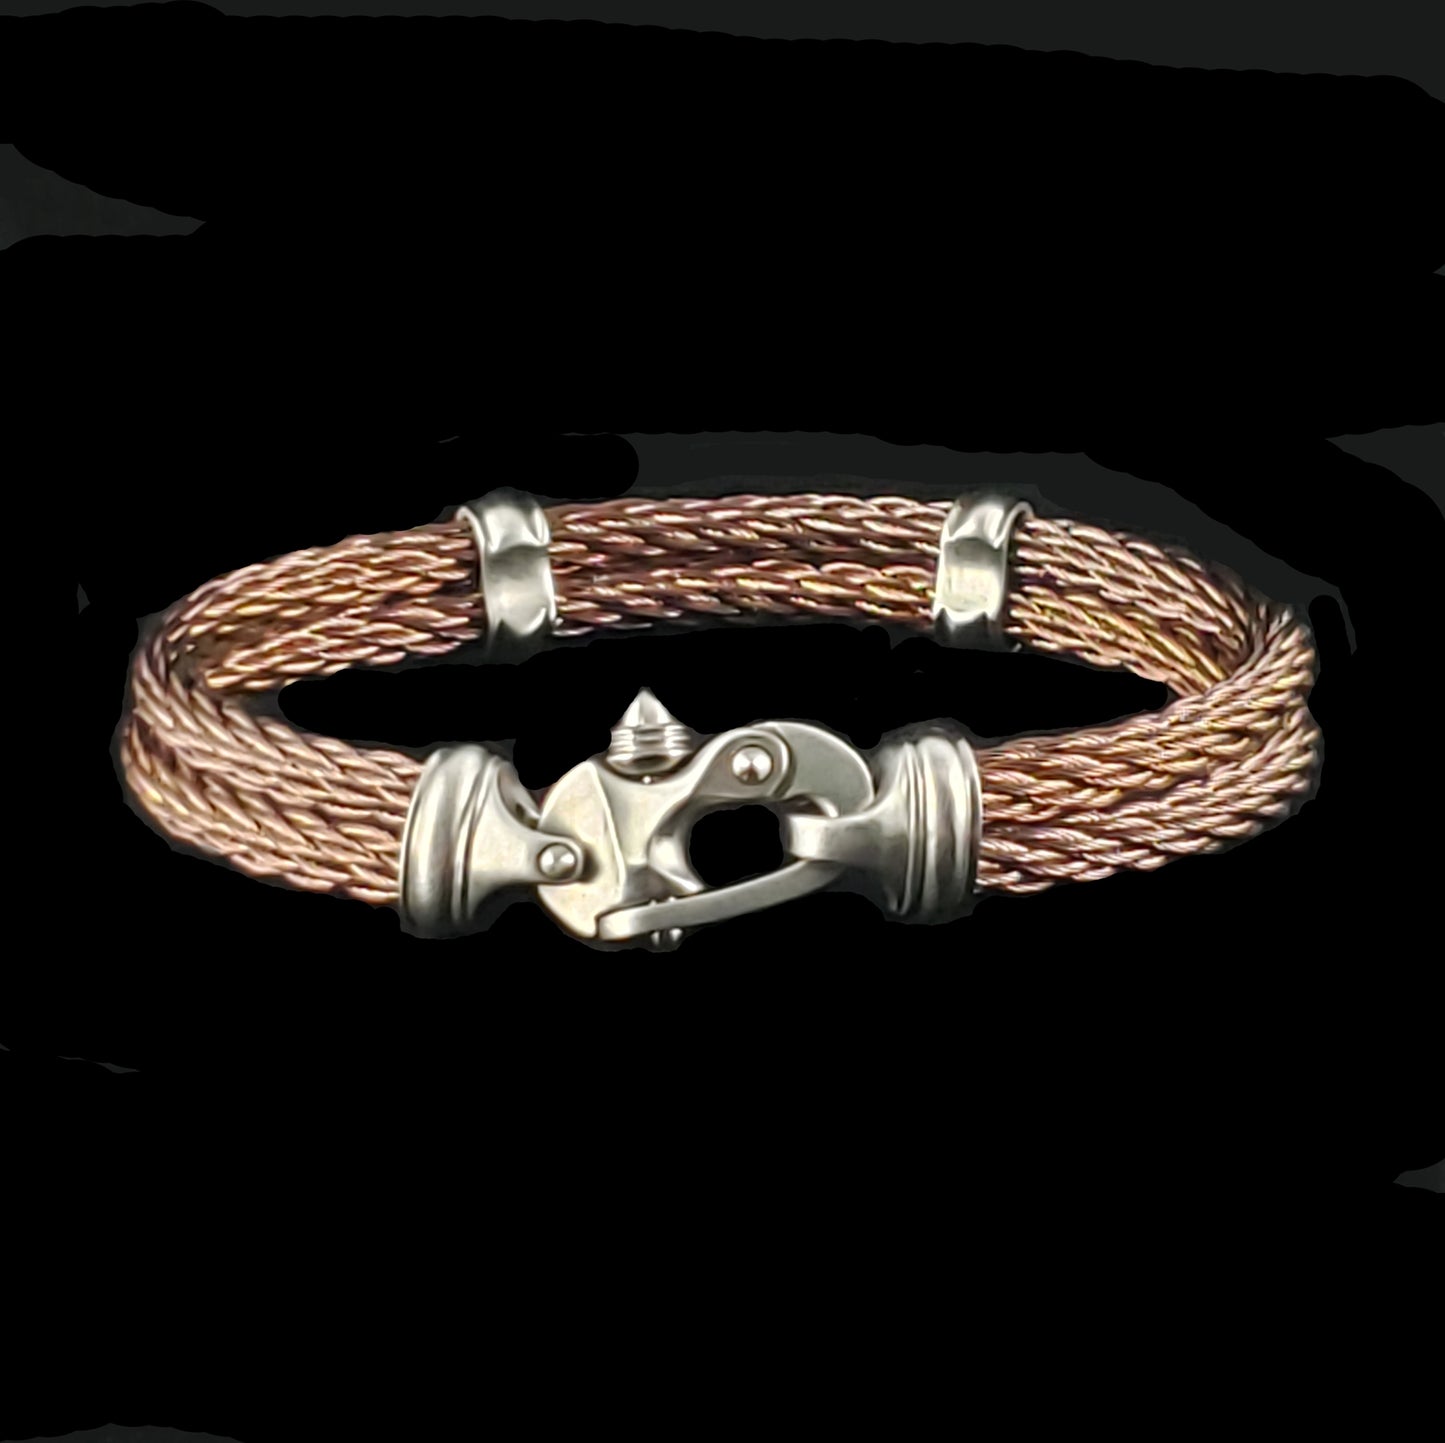 PVD Nouveau Braid® Cable Bracelet with Mariner's Clasp®